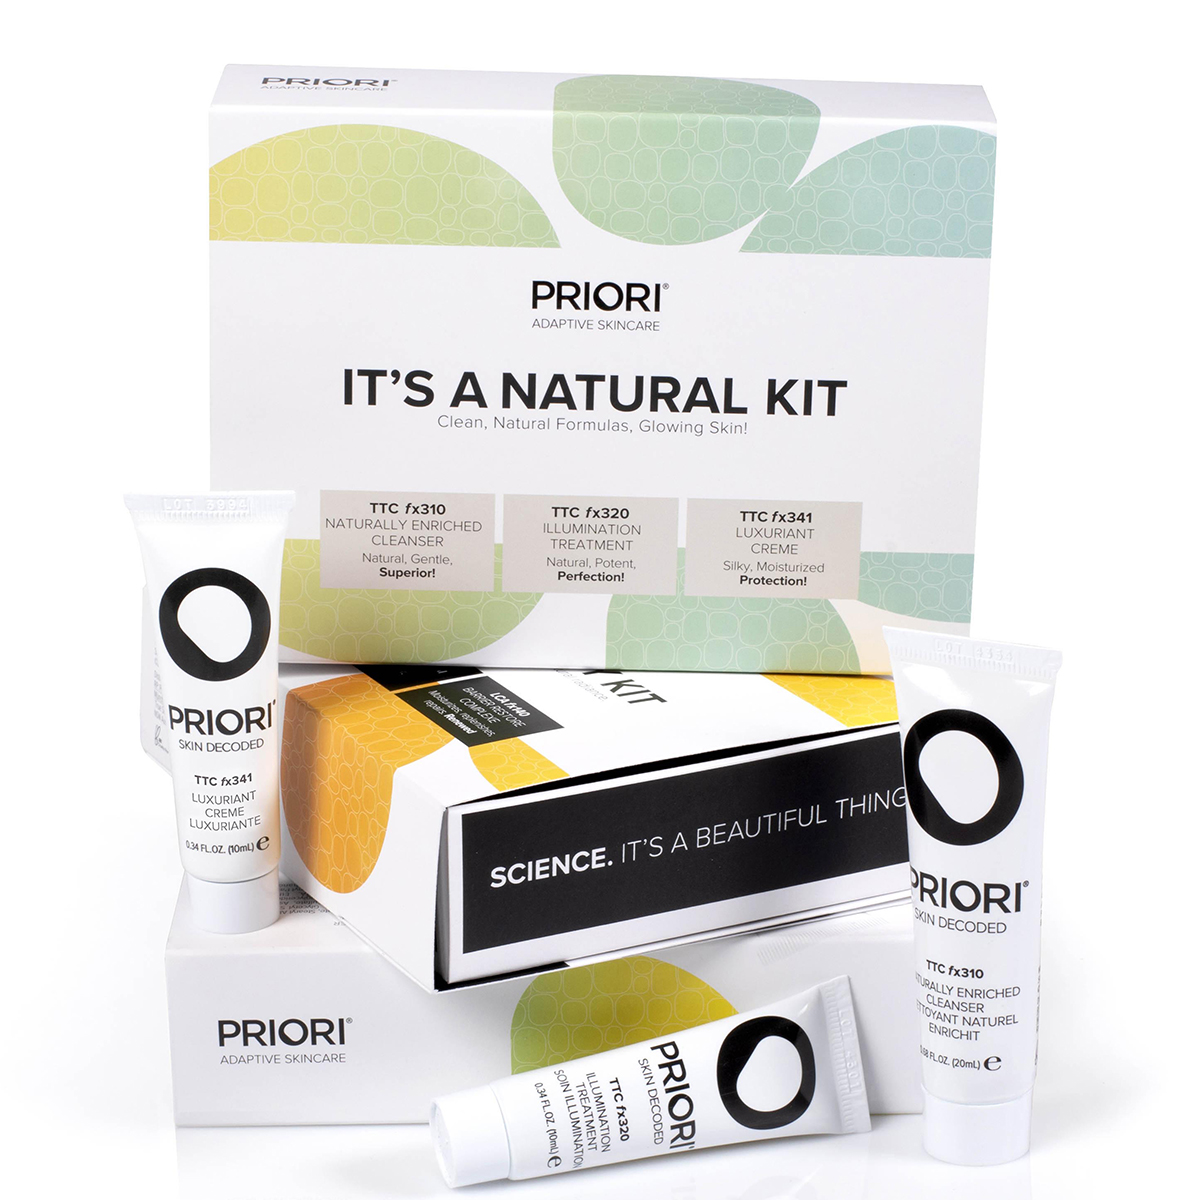 Priori It's A Natural Kit